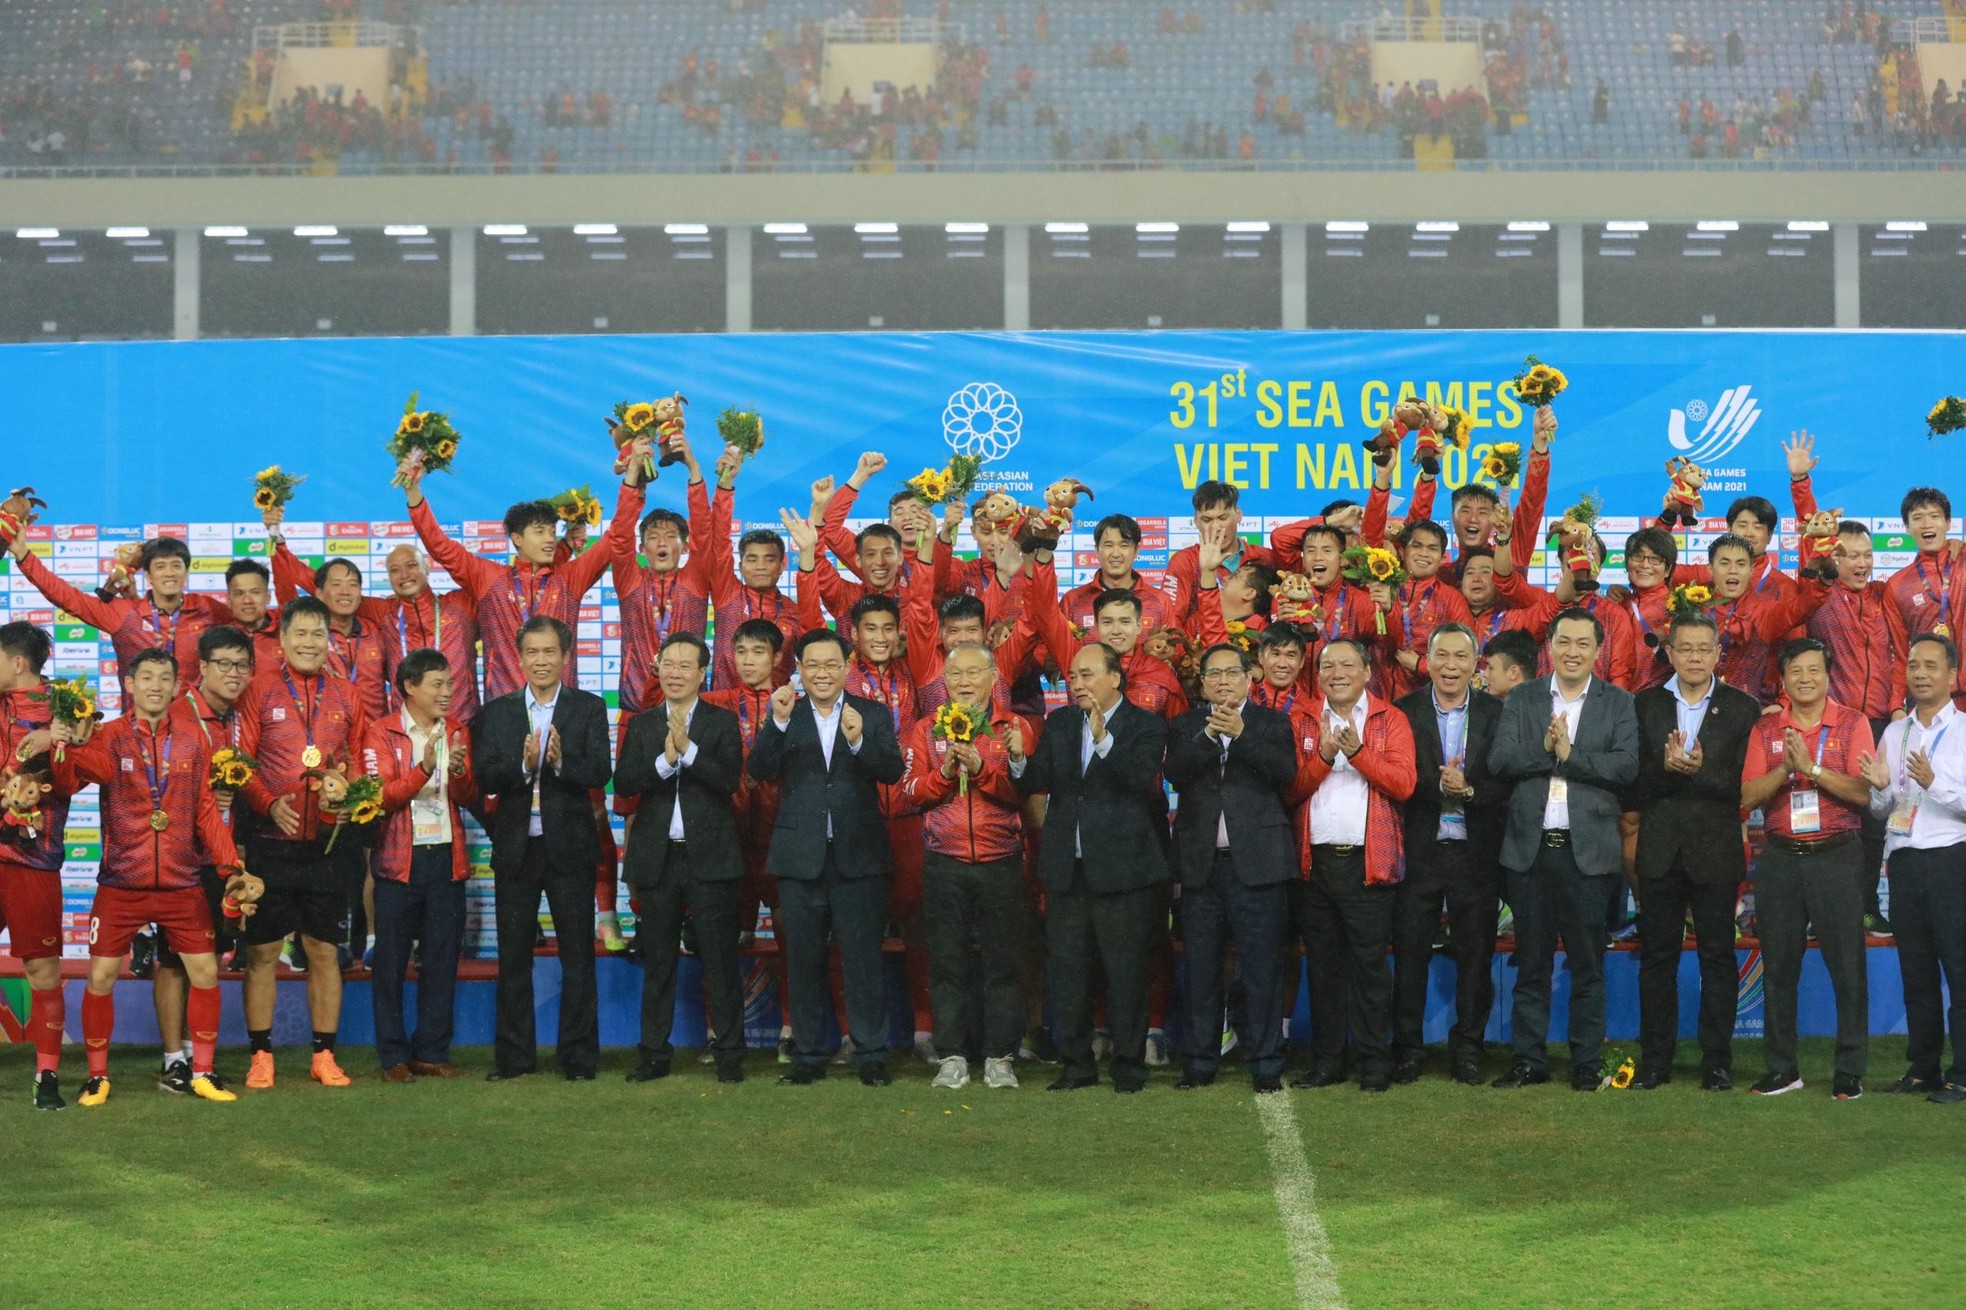 Khoảnh khắc tuyệt đẹp: tuyển thủ U23 Việt Nam 'công kênh' HLV Park Hang-seo ăn mừng chiến thắng ảnh 12